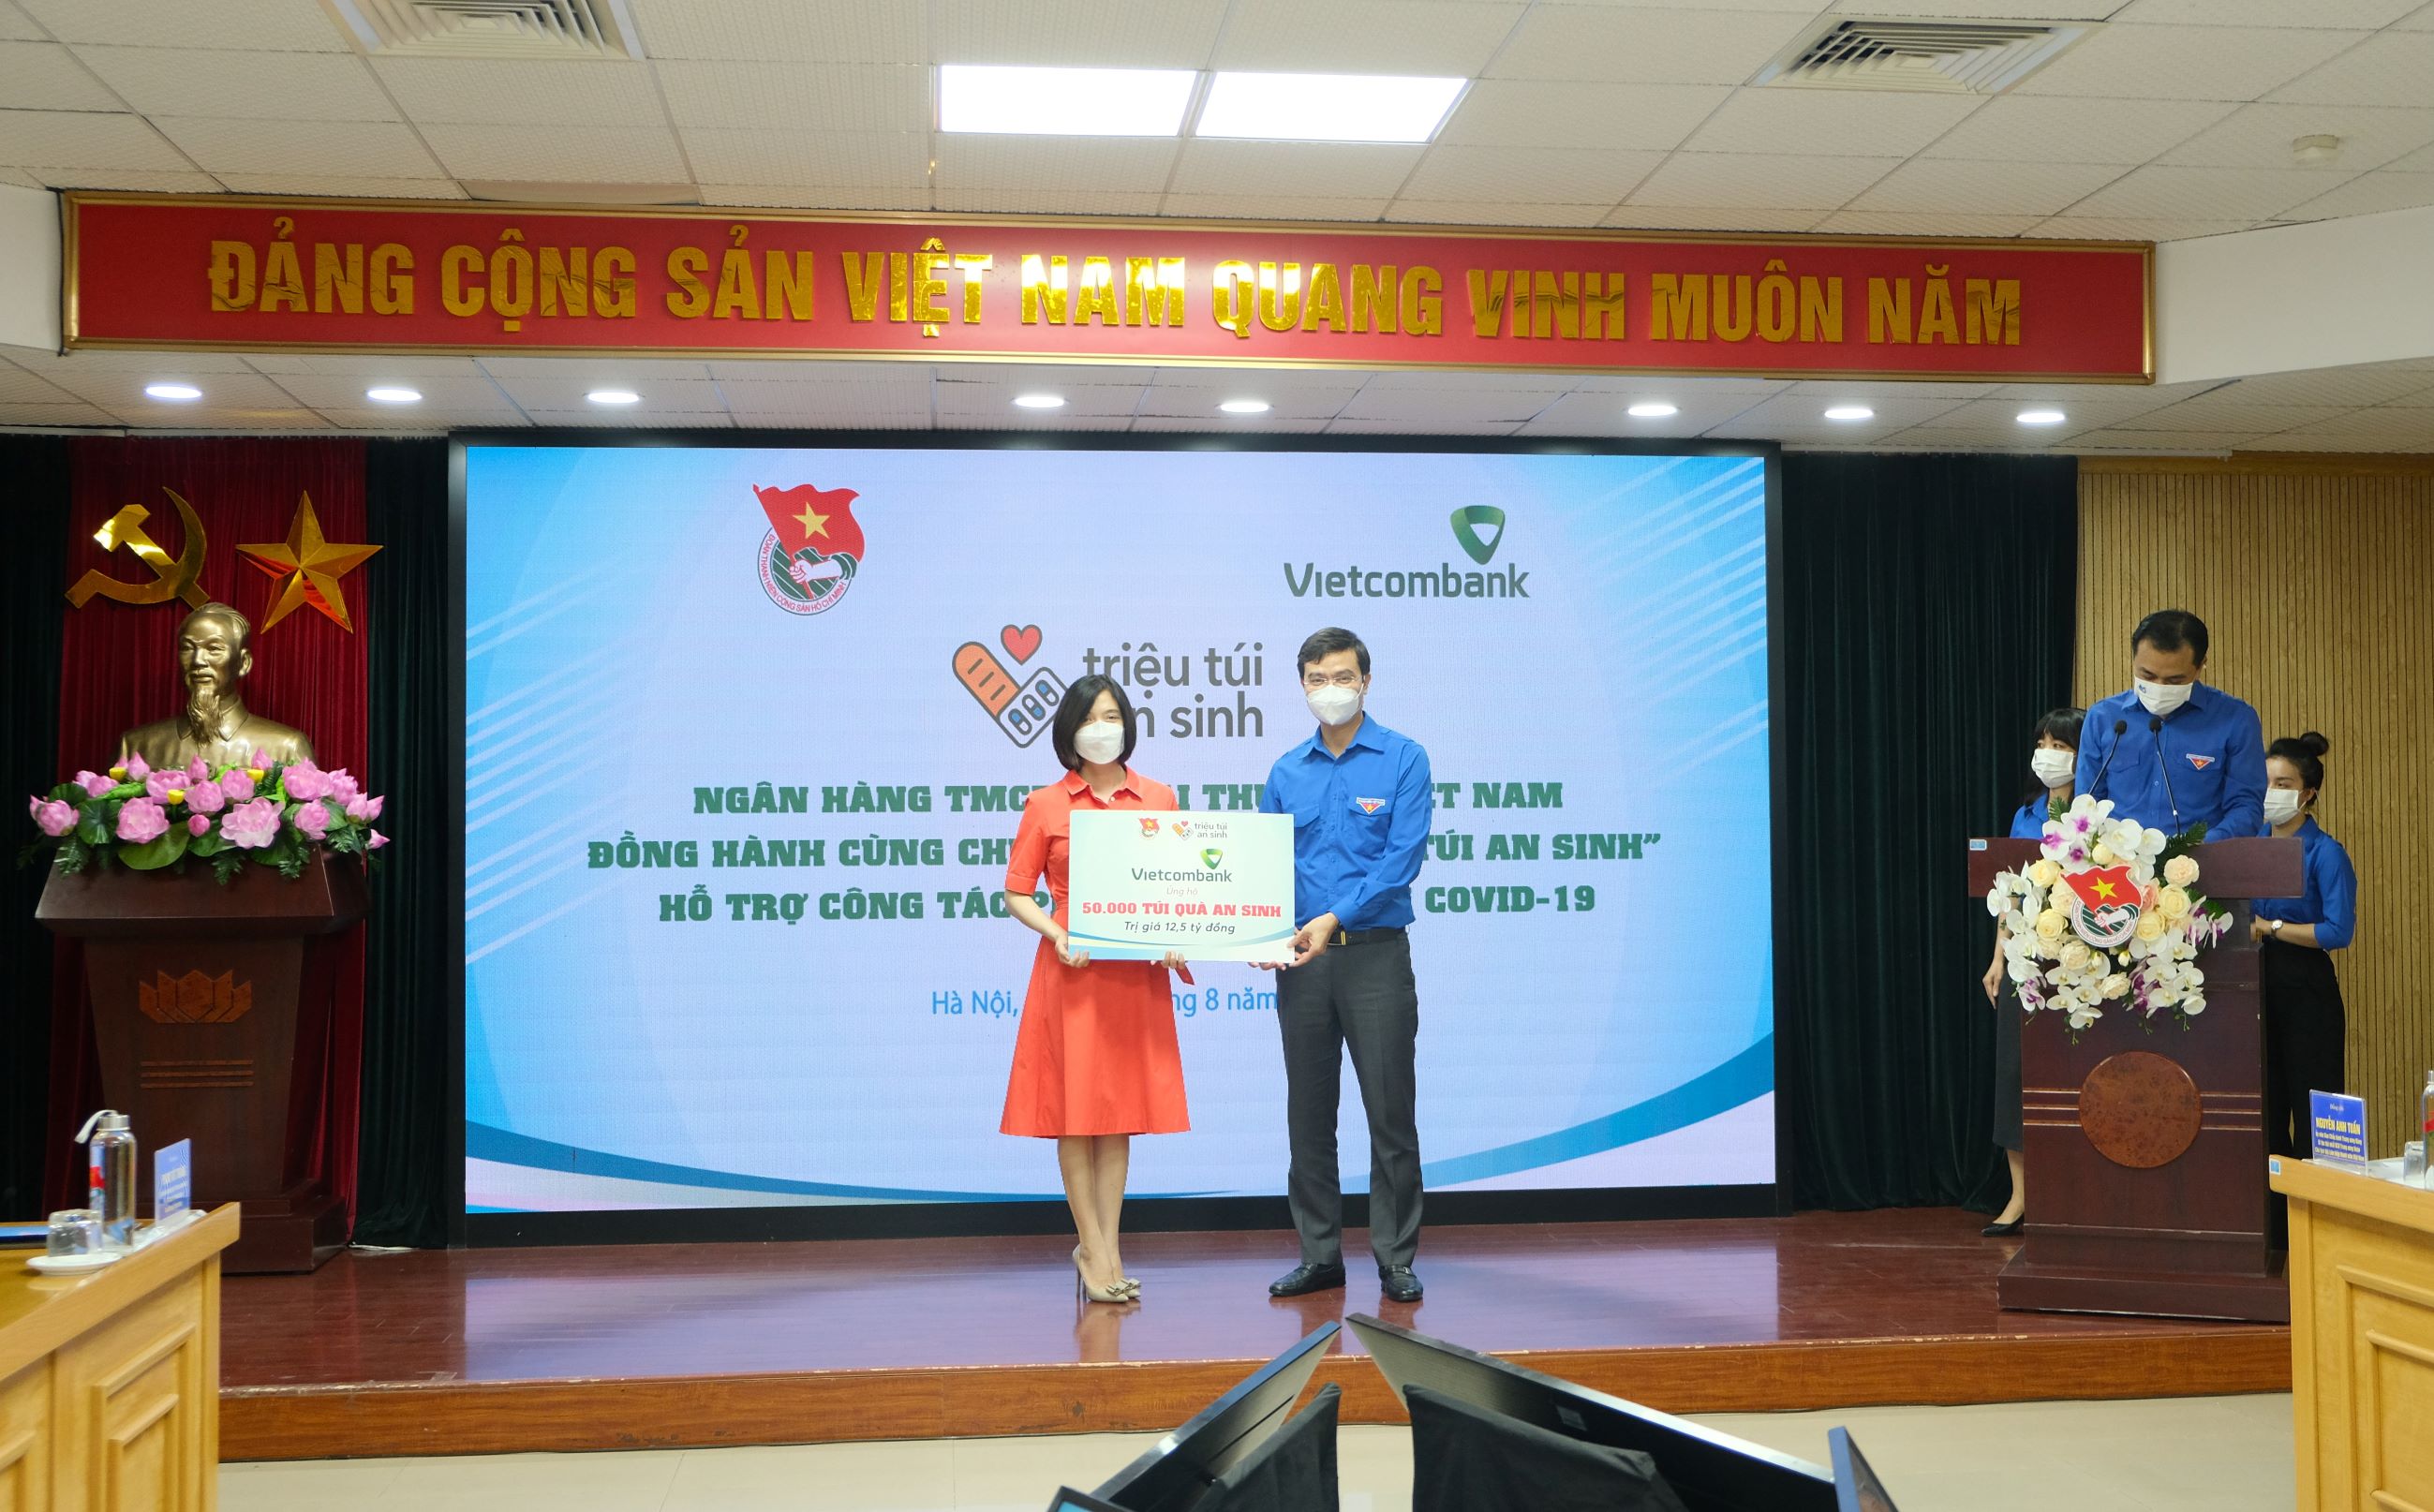 Vietcombank trao tặng 50.000 túi quà an sinh trị giá 12,5 tỷ đồng trong khuôn khổ chương trình Triệu túi an sinh